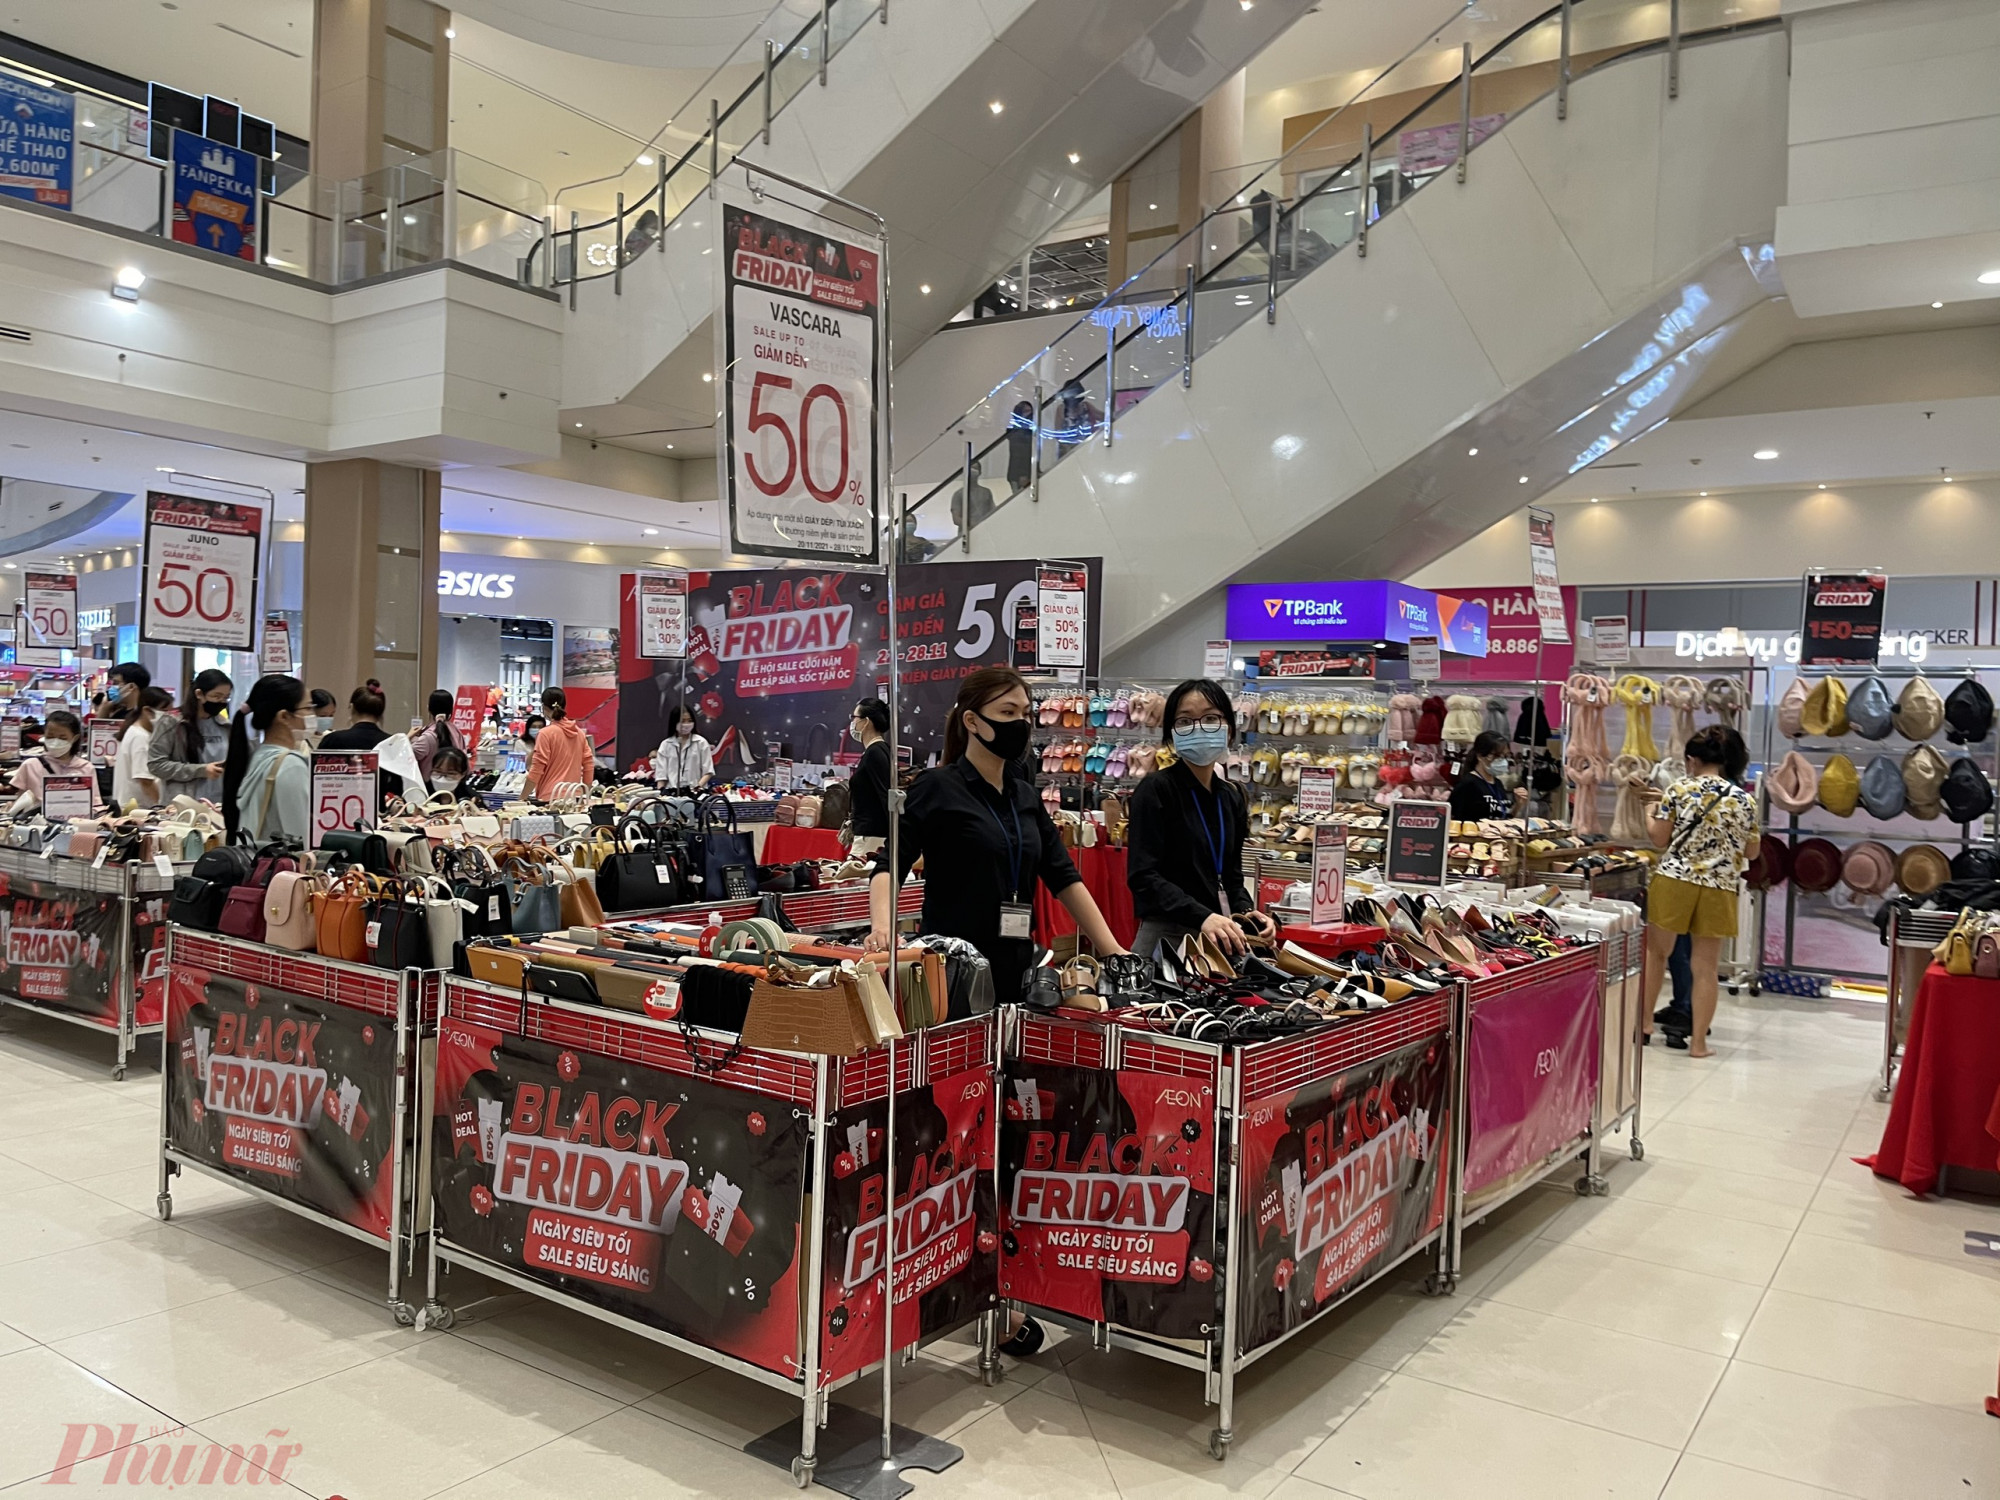 Tại Aeon Bình Tân, hàng loạt cửa hàng, thương hiệu trưng bảng giảm giá đến 50 - 70%, đủ các mặt hàng quần áo, giày dép, túi xách.... Nhiều sản phẩm gia dụng, chén đĩa... cũng được giảm giá 10 - 30%.